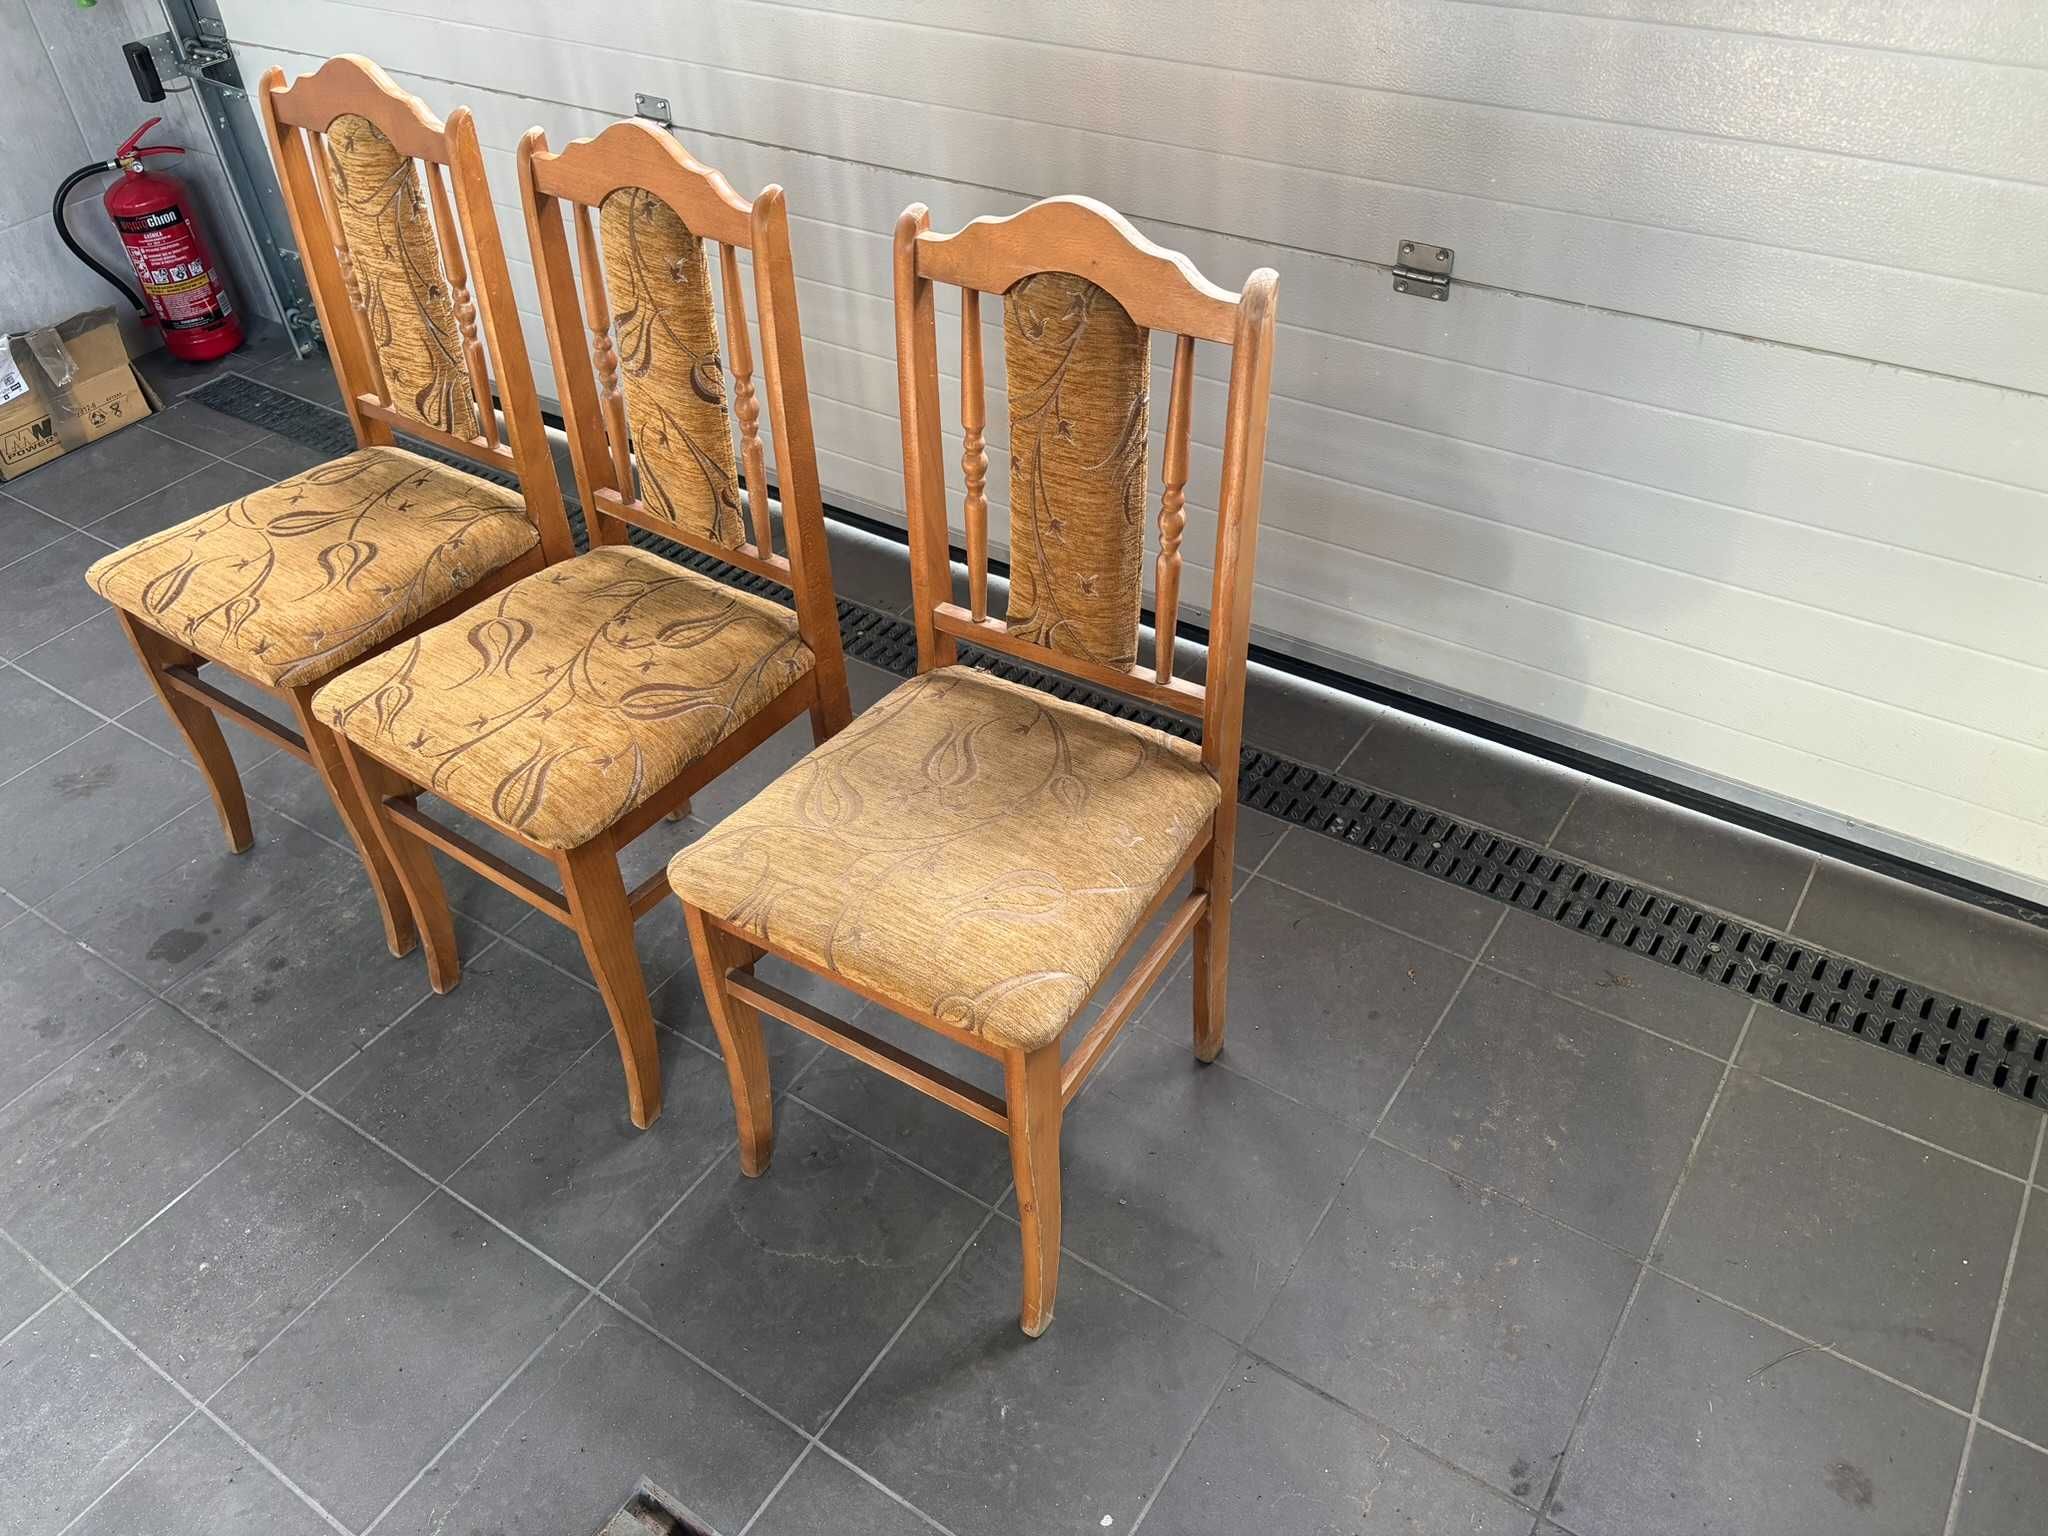 Krzesła 3 sztuki